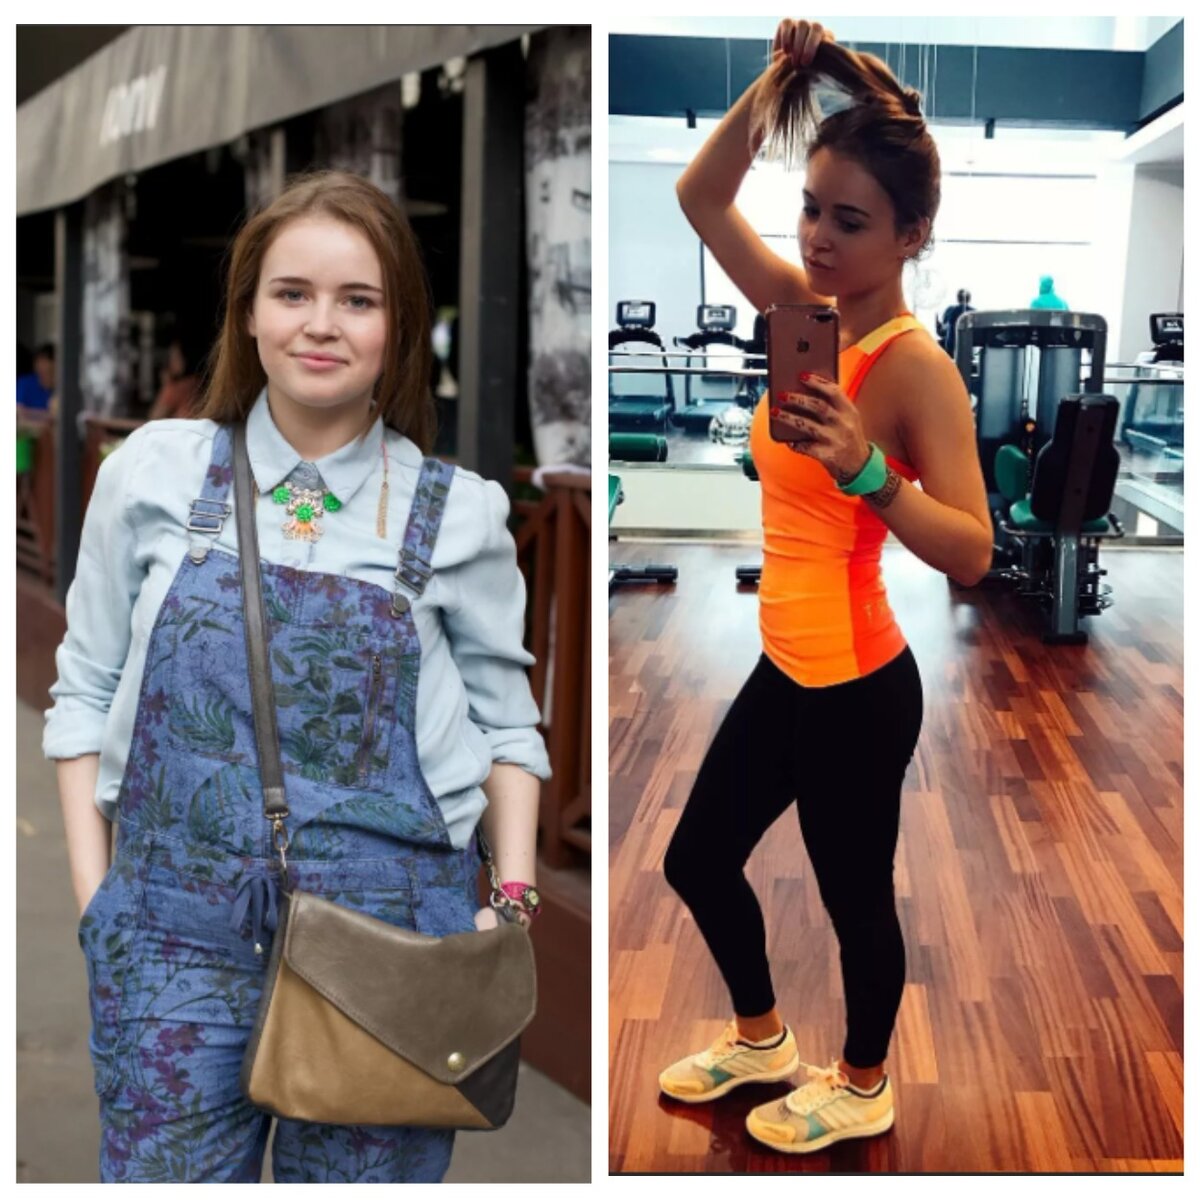 Полина гренц похудела: фото до и после, диета, меню, секреты похудения саши мамаевой из «физрука»